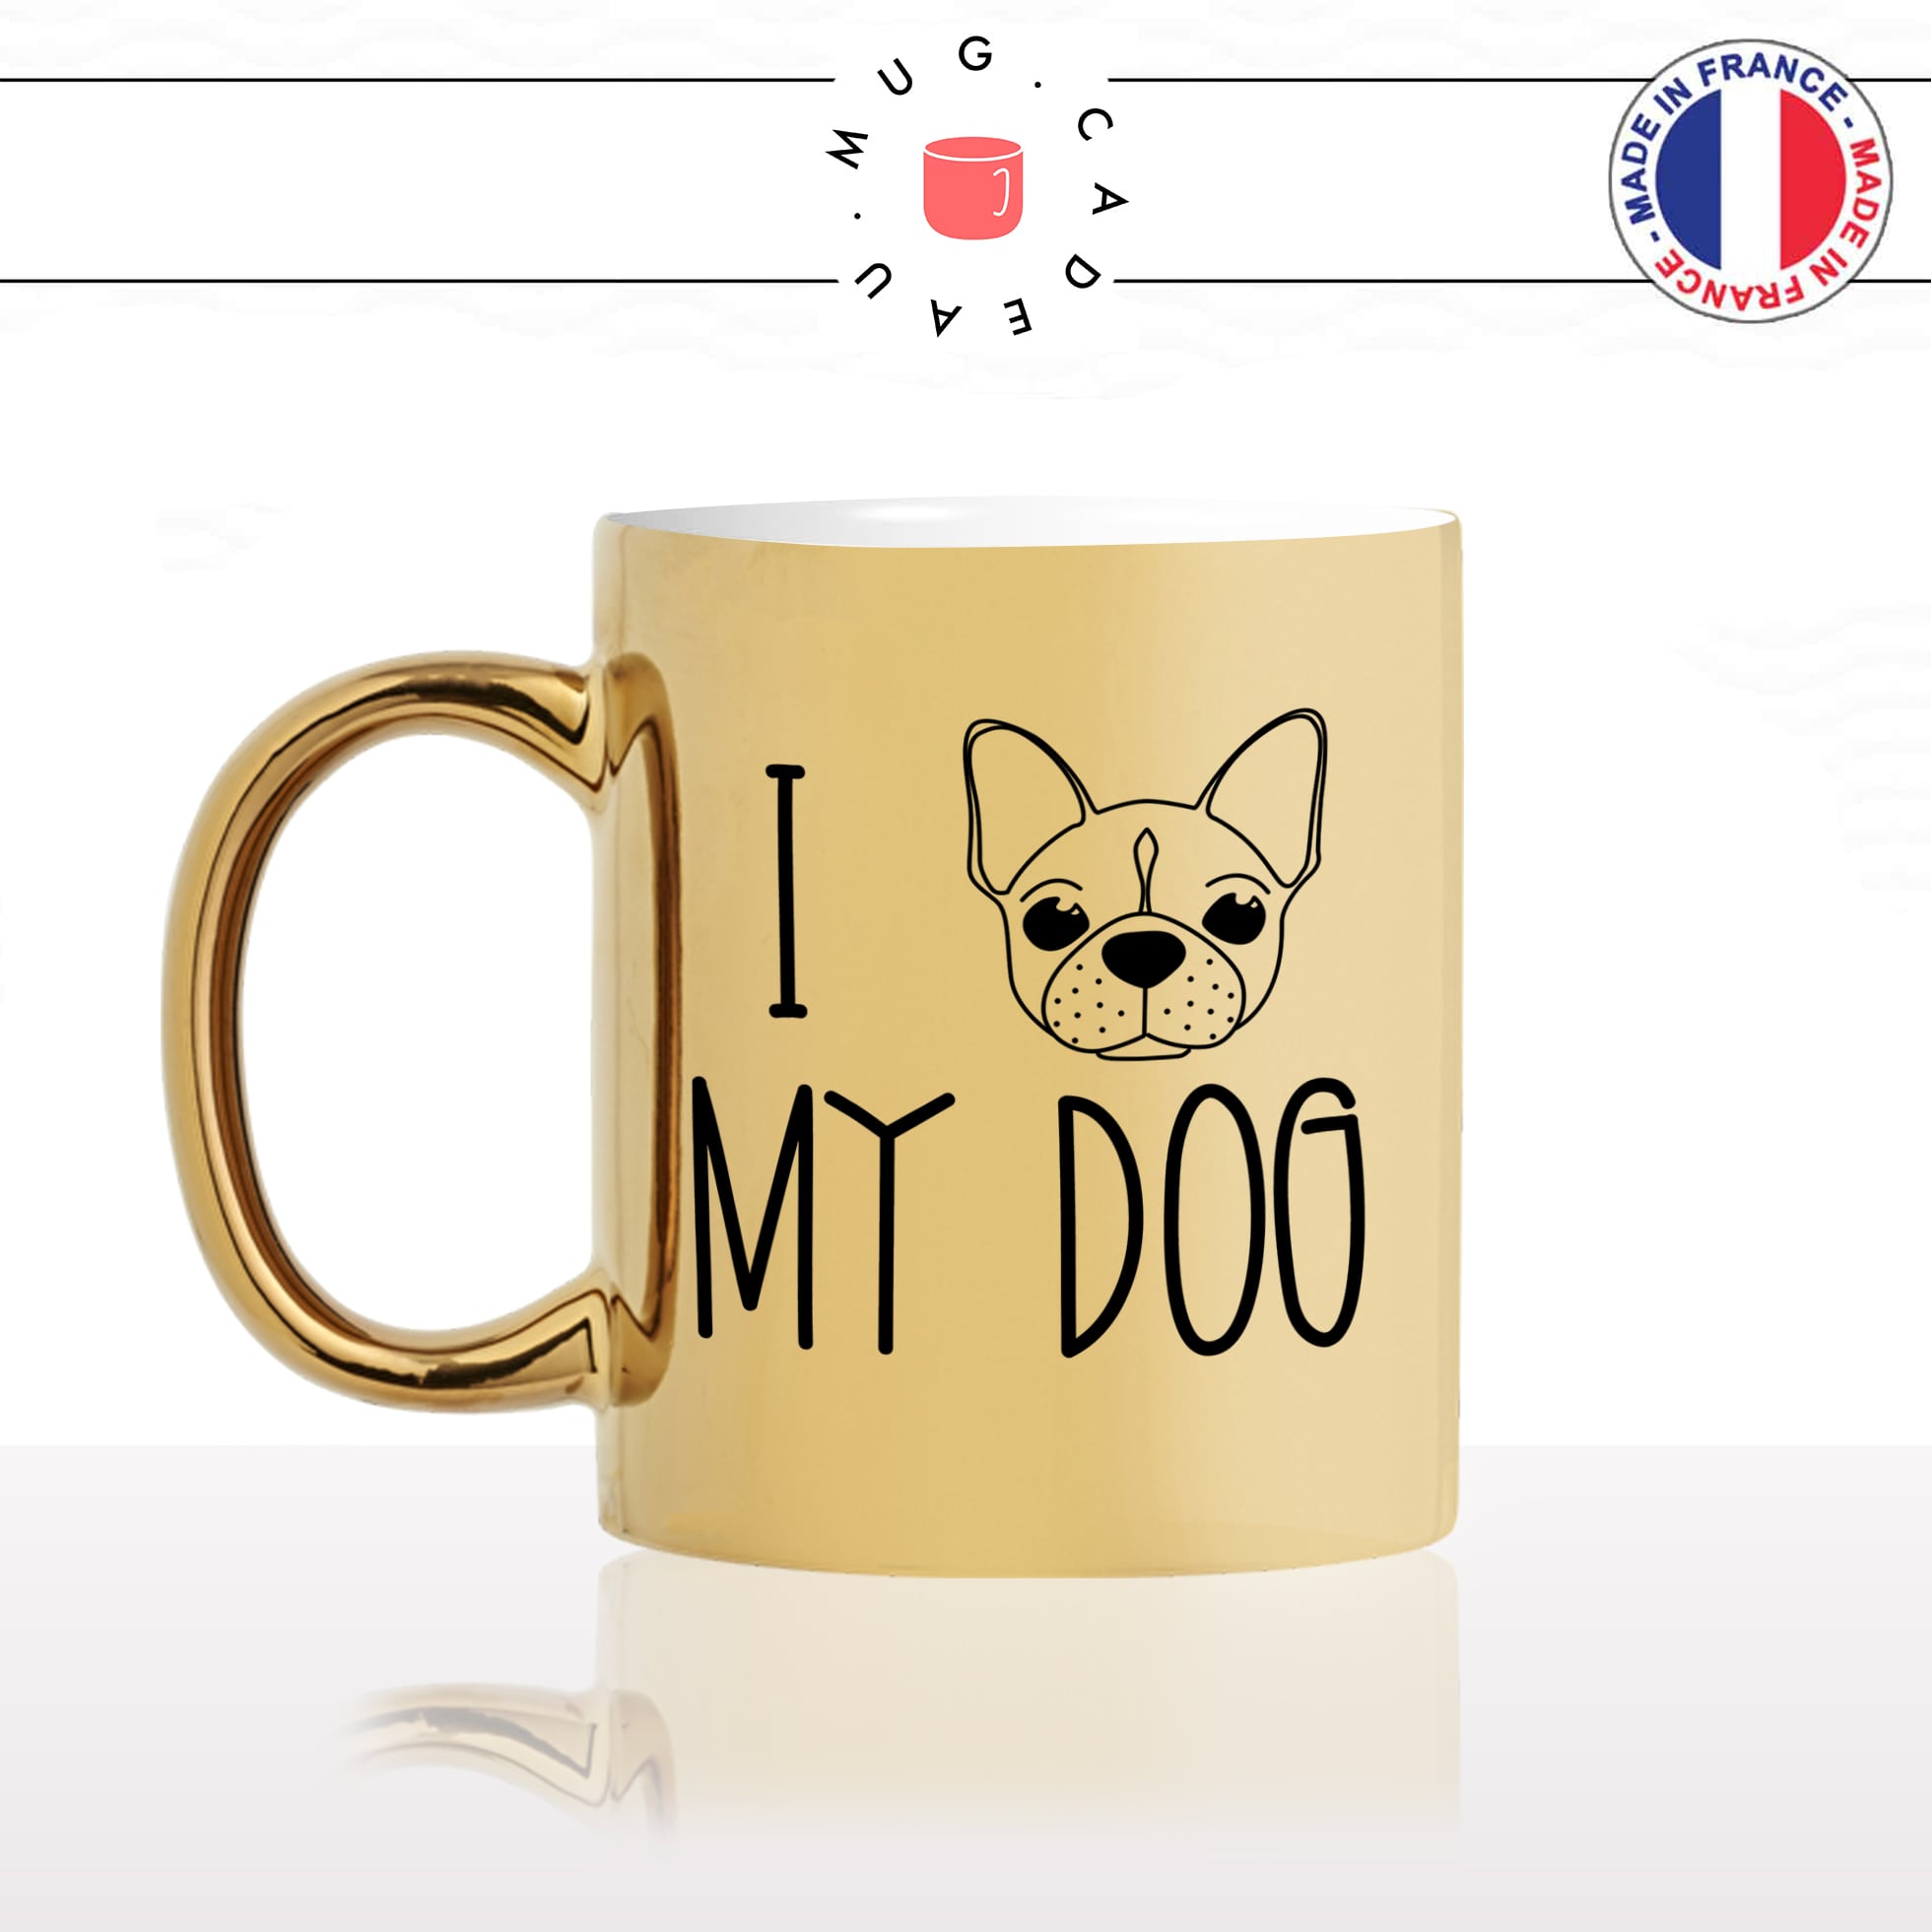 mug-tasse-or-doré-i-love-my-dog-tete-pug-chien-amour-mignon-animal-chiot-noir-fun-café-thé-idée-cadeau-original-personnalisé-gold-min